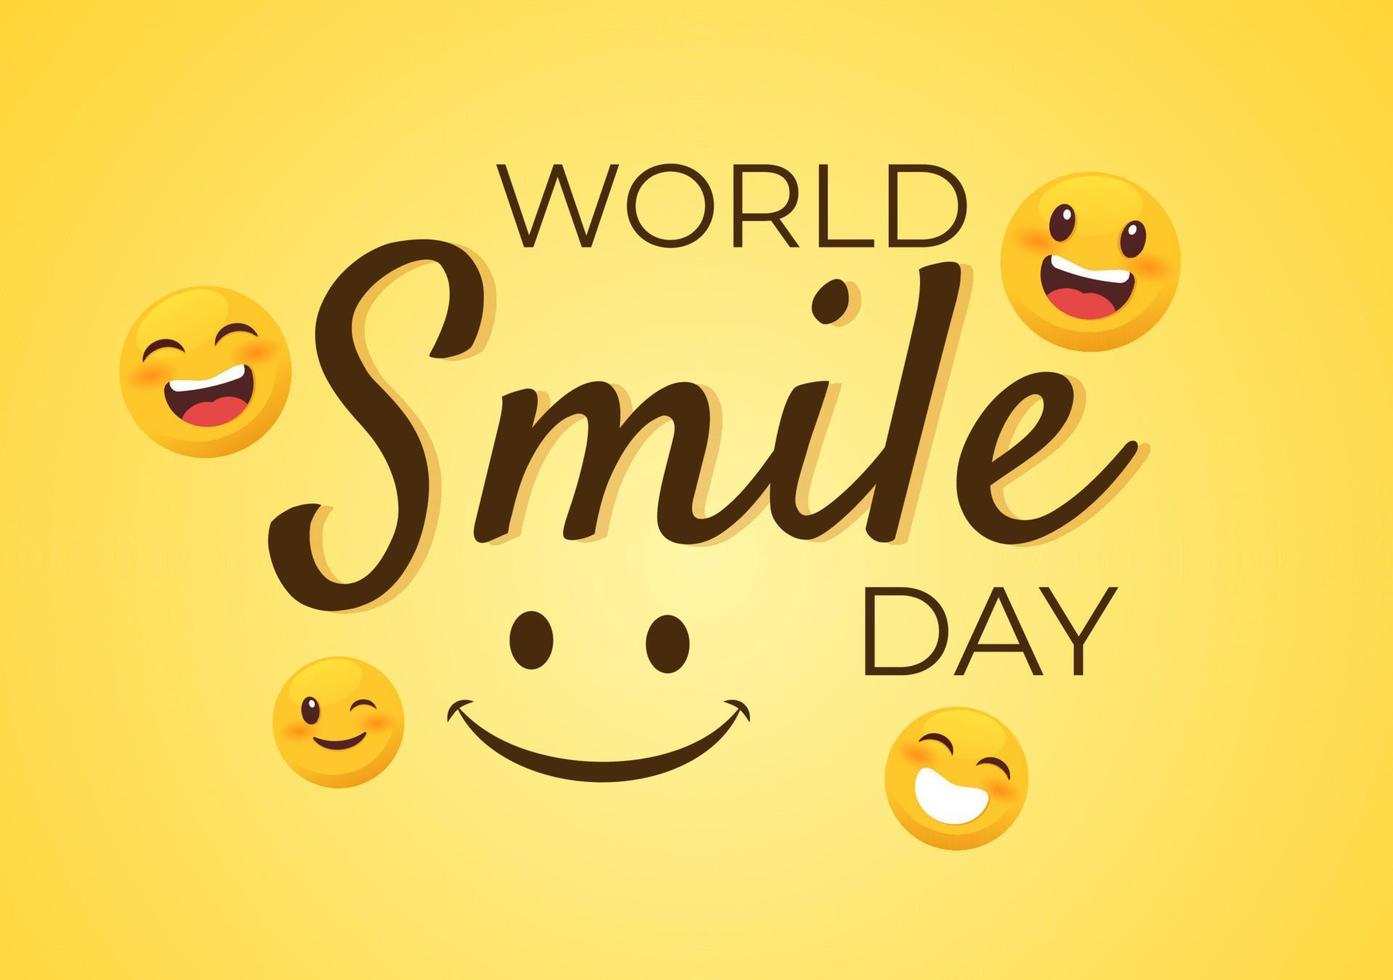 wereld glimlach dag hand getekende cartoon afbeelding met lachende uitdrukking en geluk gezicht in vlakke stijl achtergrond vector